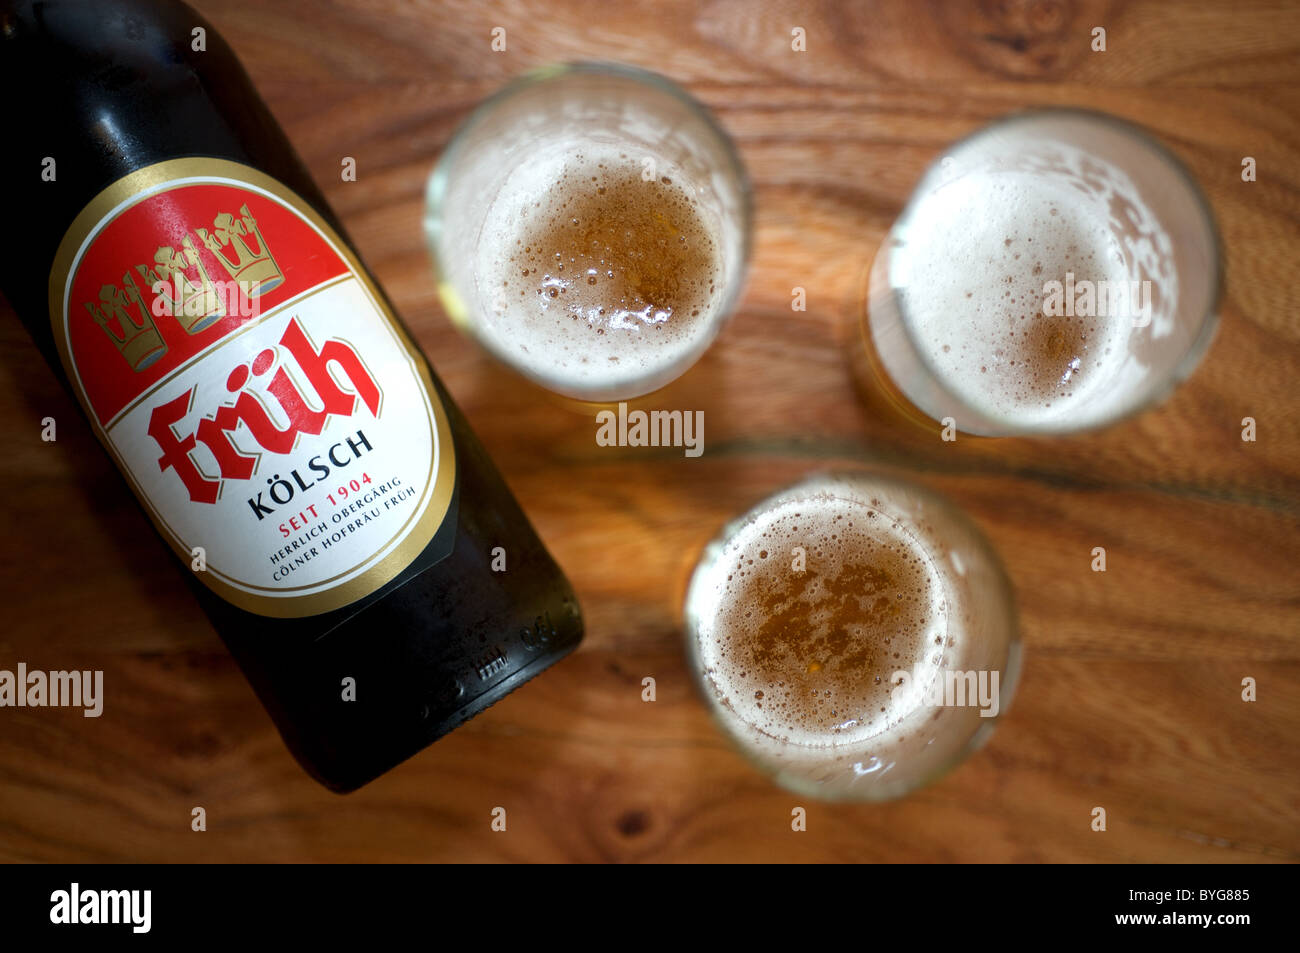 Fruh Koisch beer Stock Photo